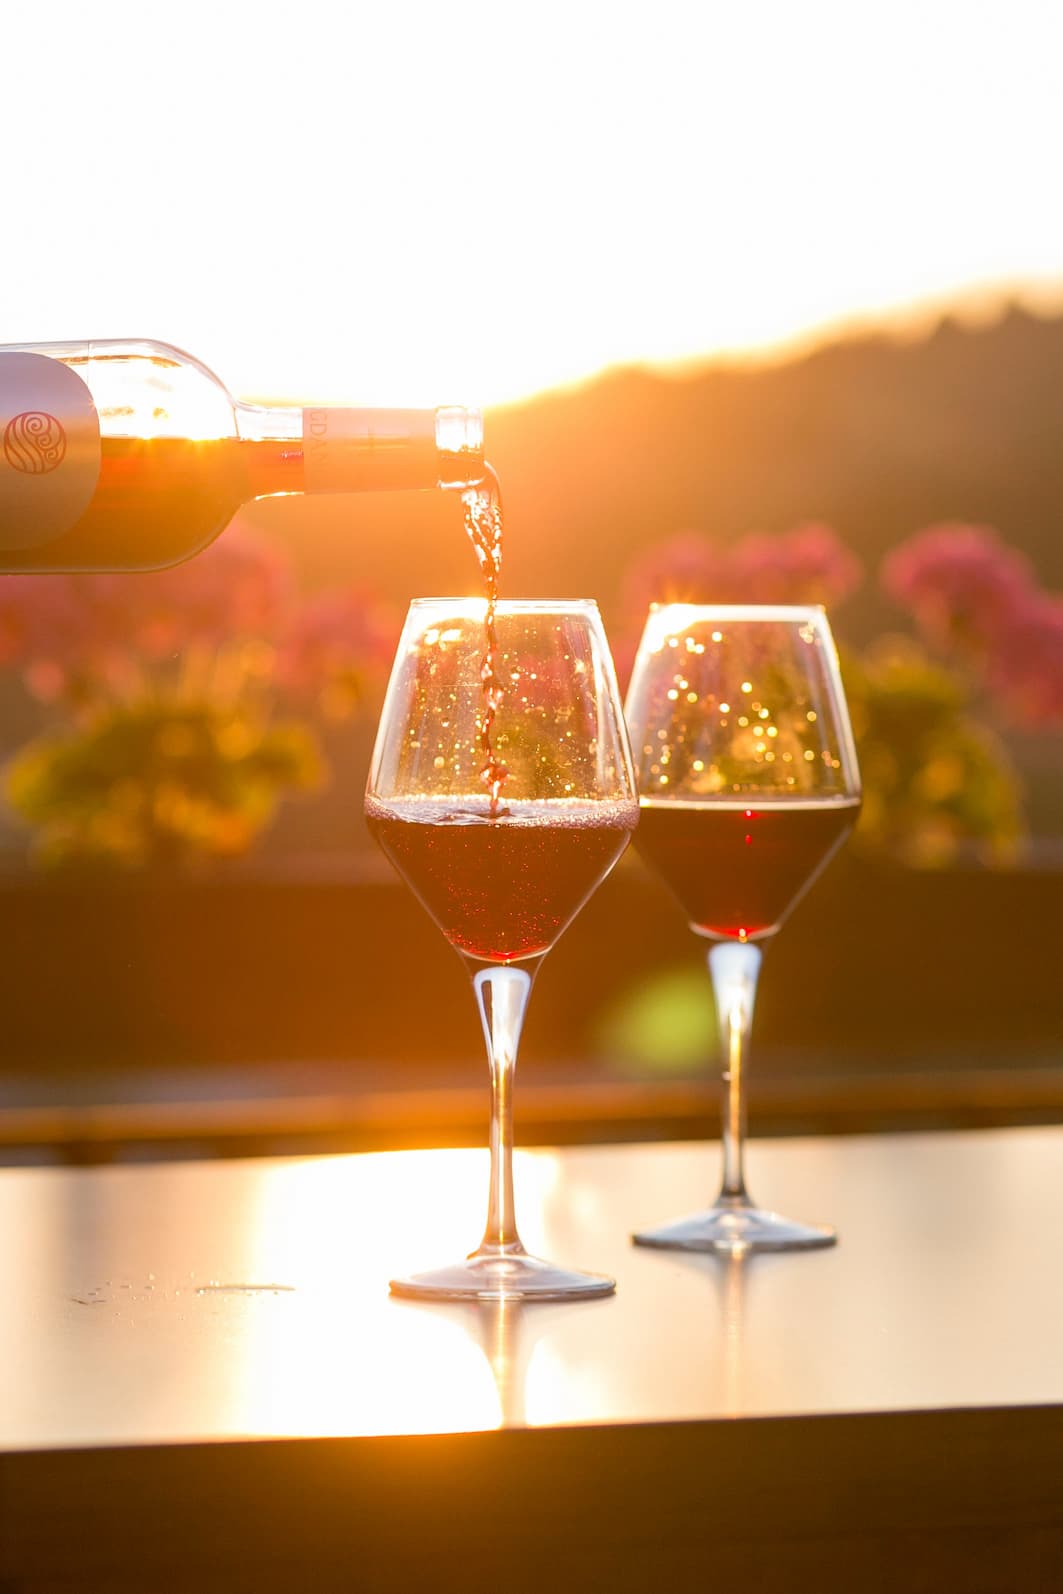 Uma pessoa serve vinho em duas taças de cristal. Imagem disponível em Unsplash.